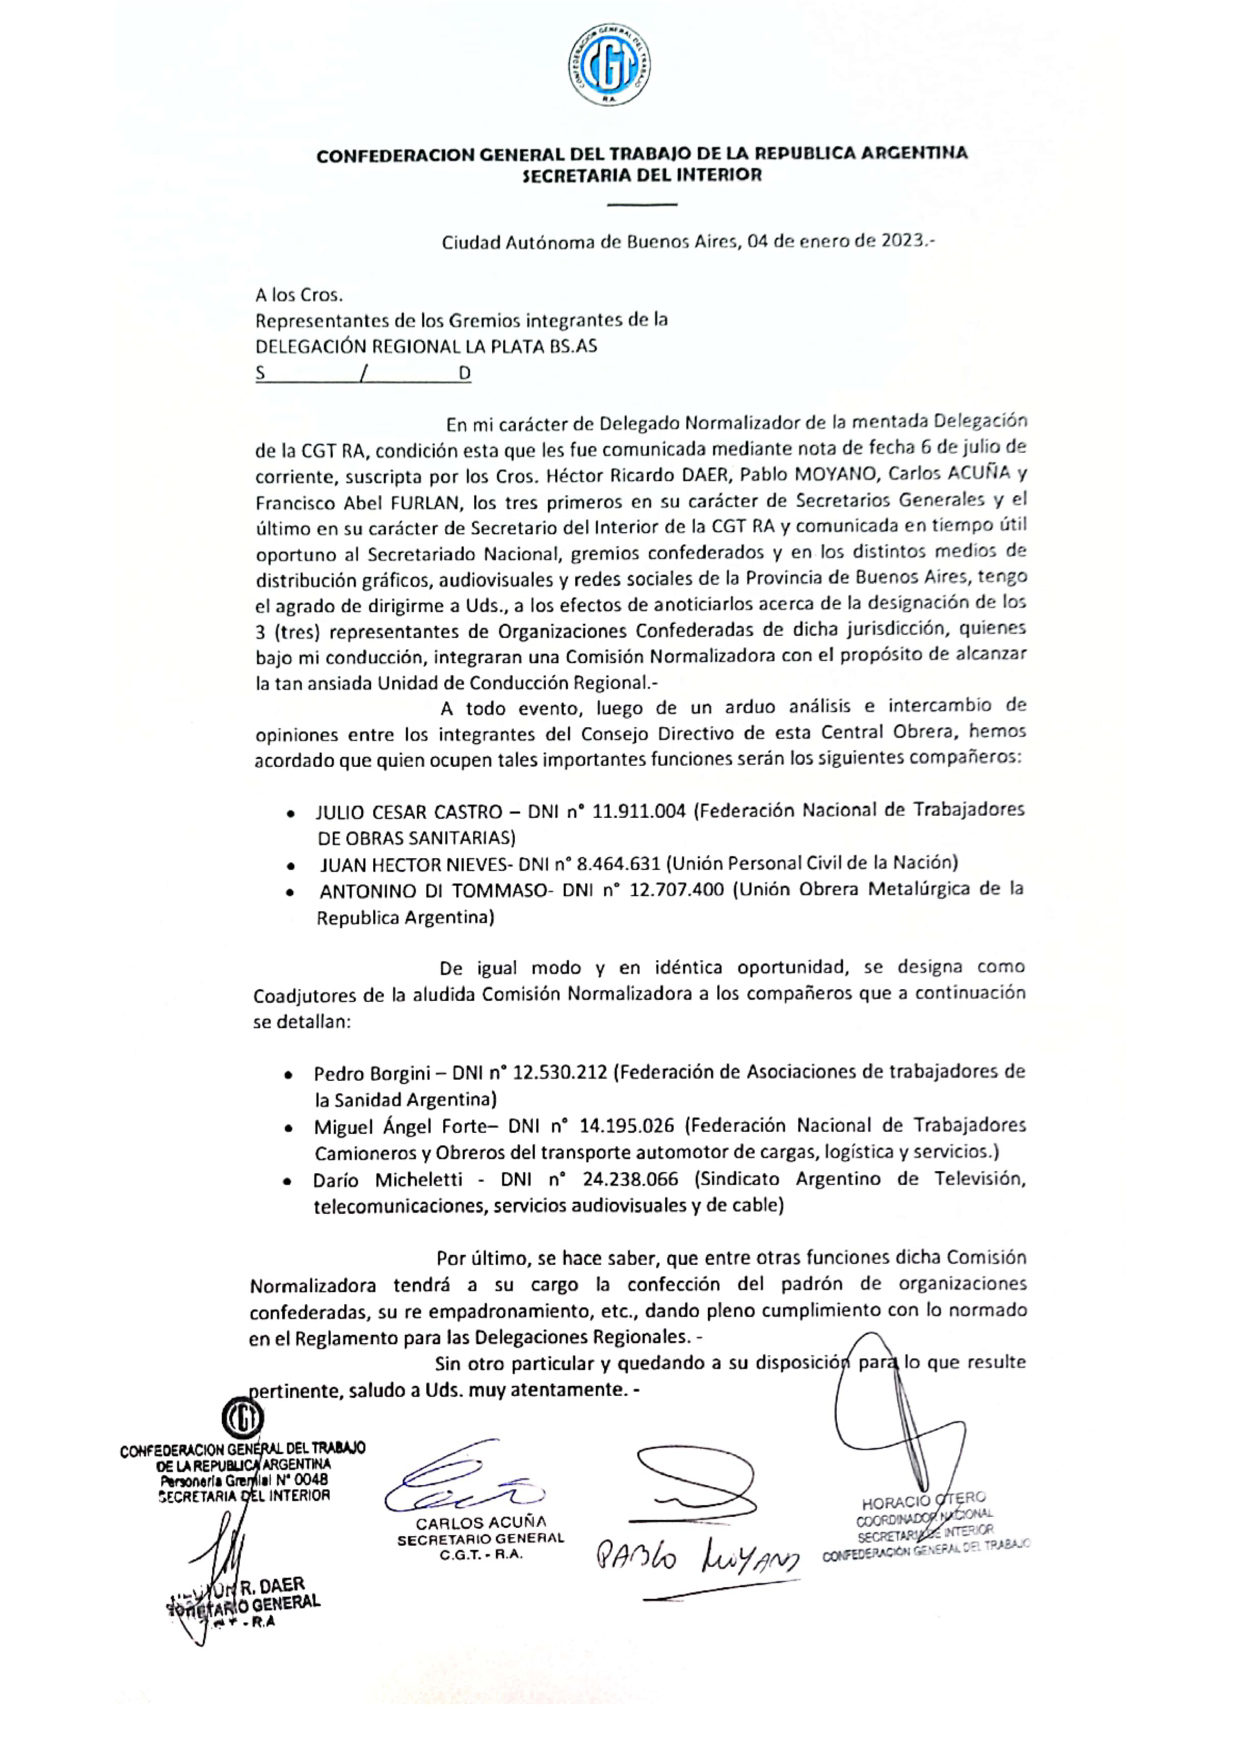 Héctor Nieves asumió como integrante de la Comisión Normalizadora de la CGT Regional La Plata